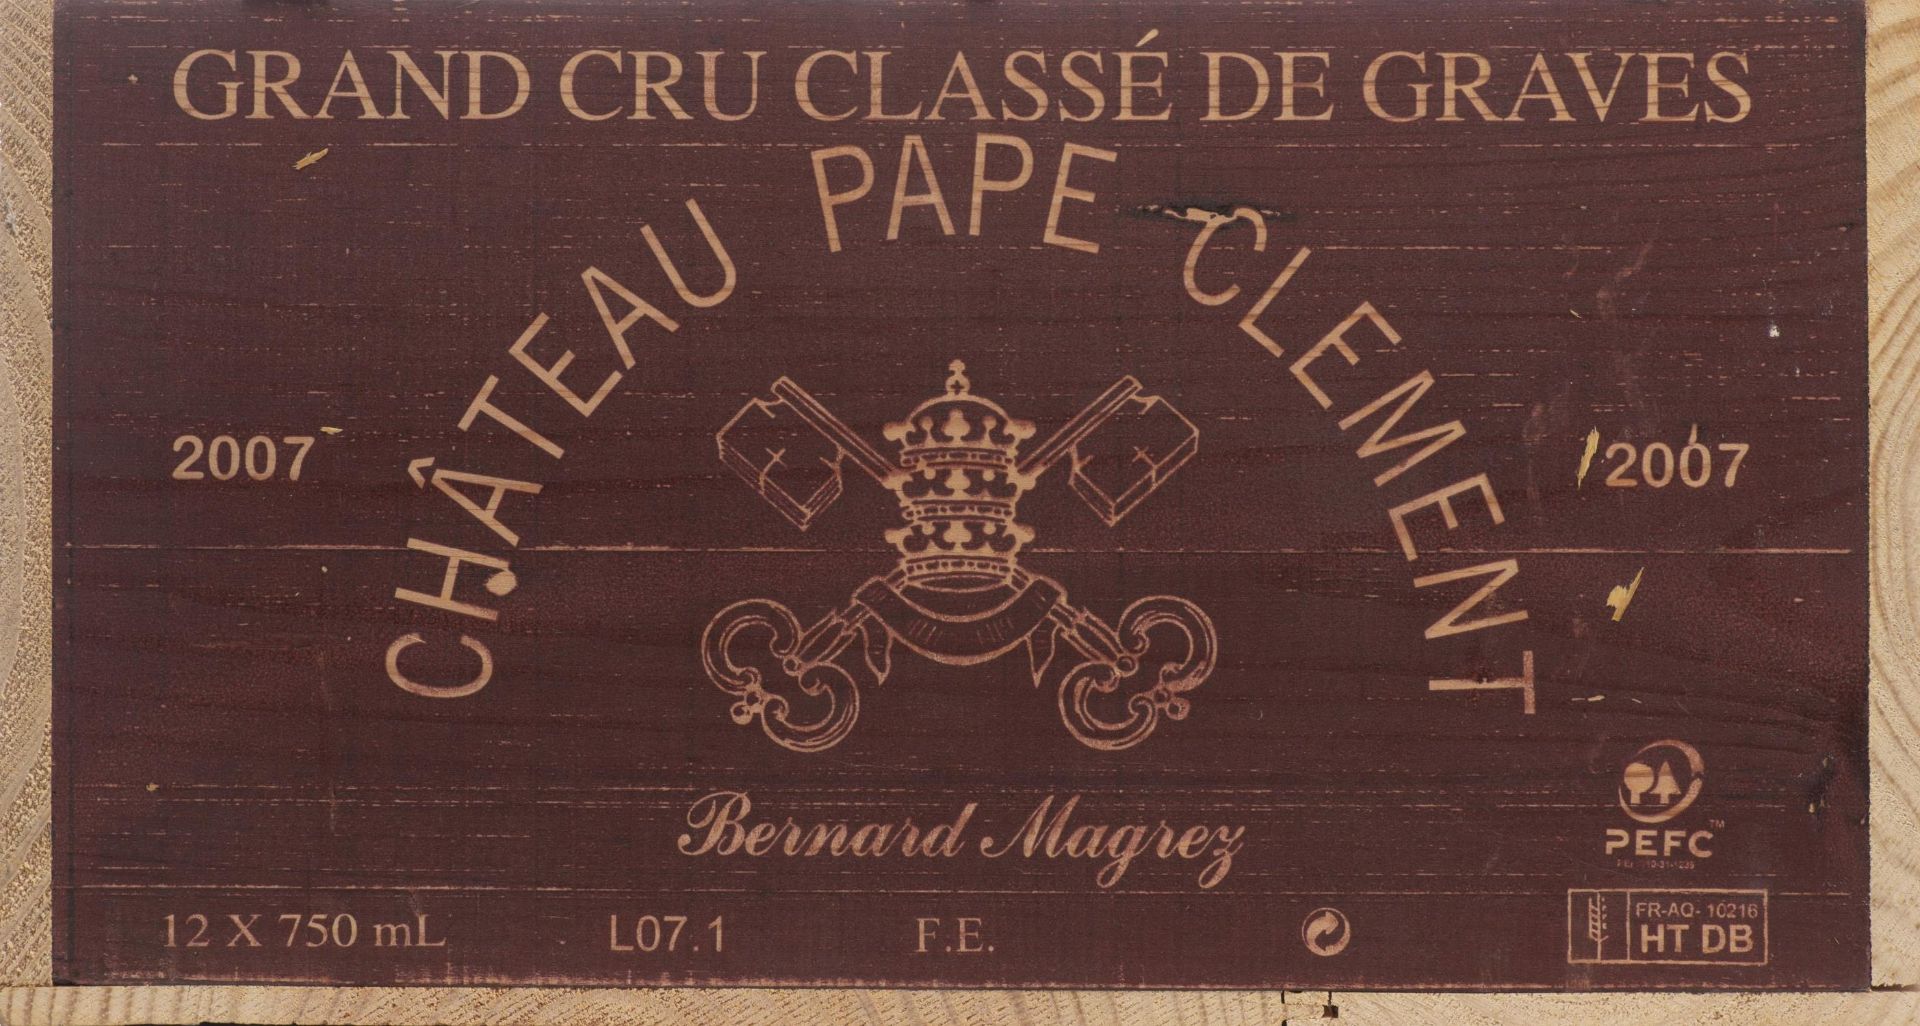 Château Pape Clément, Grand cru, Graves, 2007 - Image 13 of 14